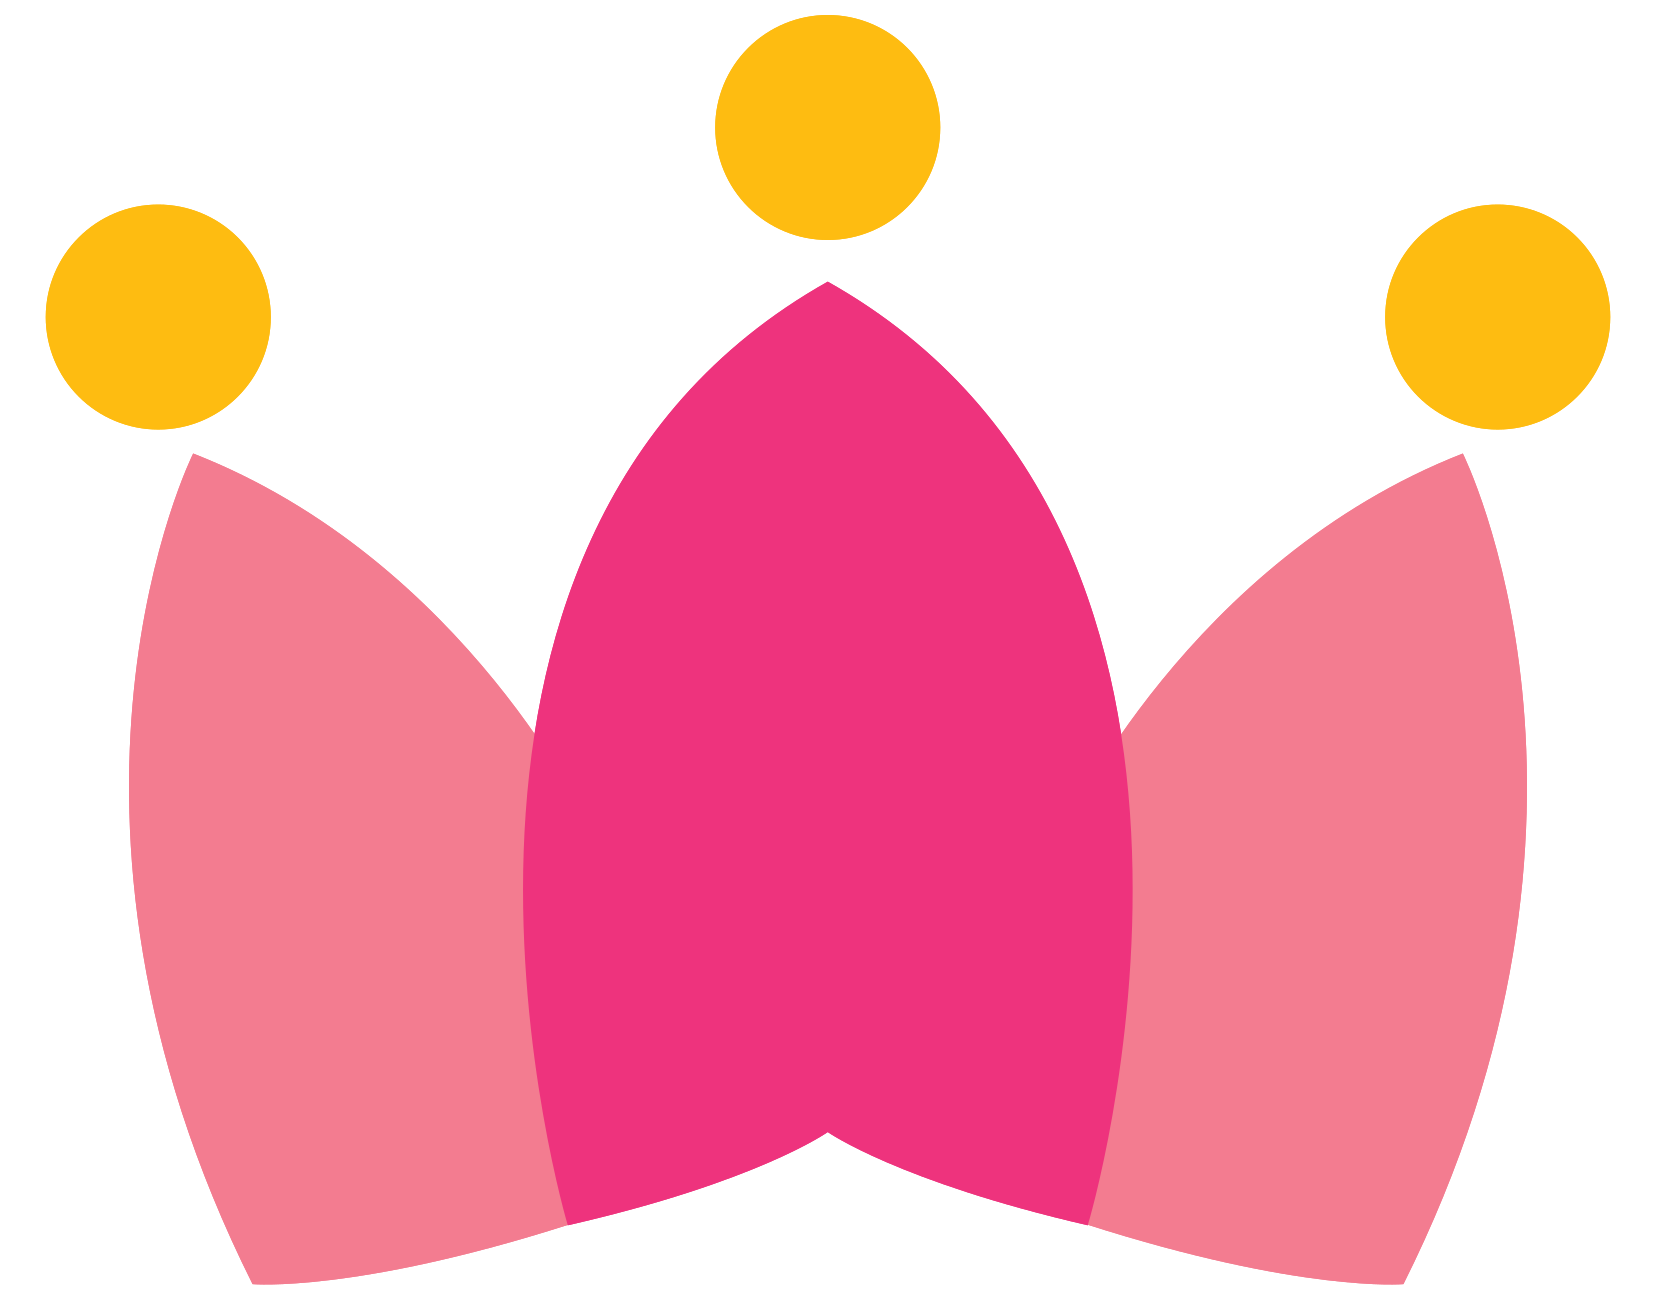 Crown logo png